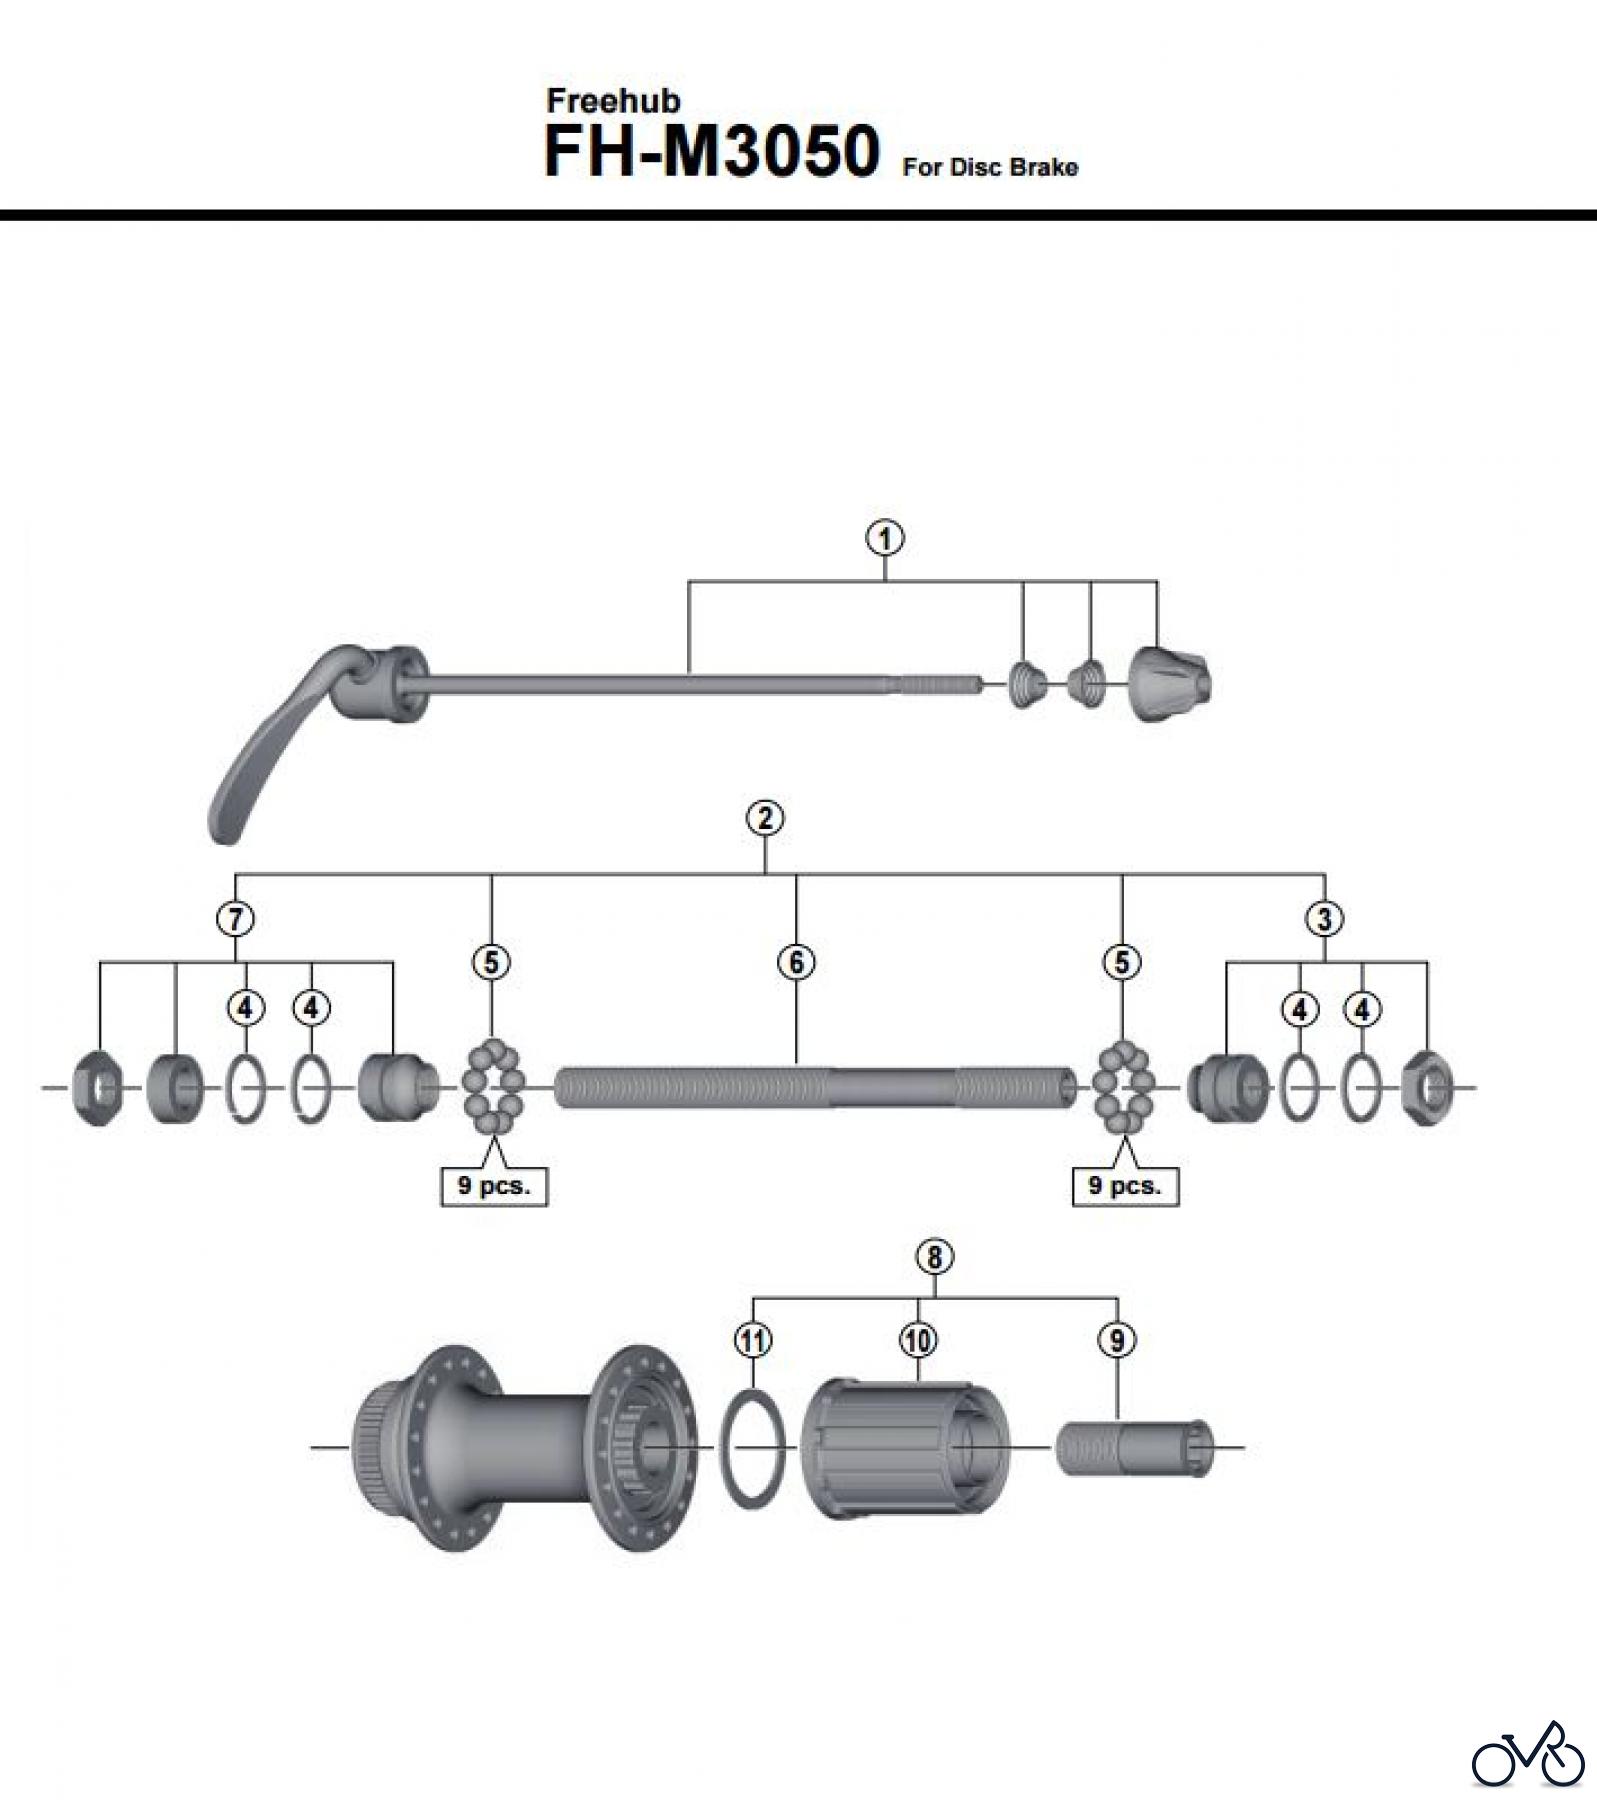  Shimano FH Free Hub - Freilaufnabe FH-M3050 -3839 Kassettennabe für Scheibenbremse